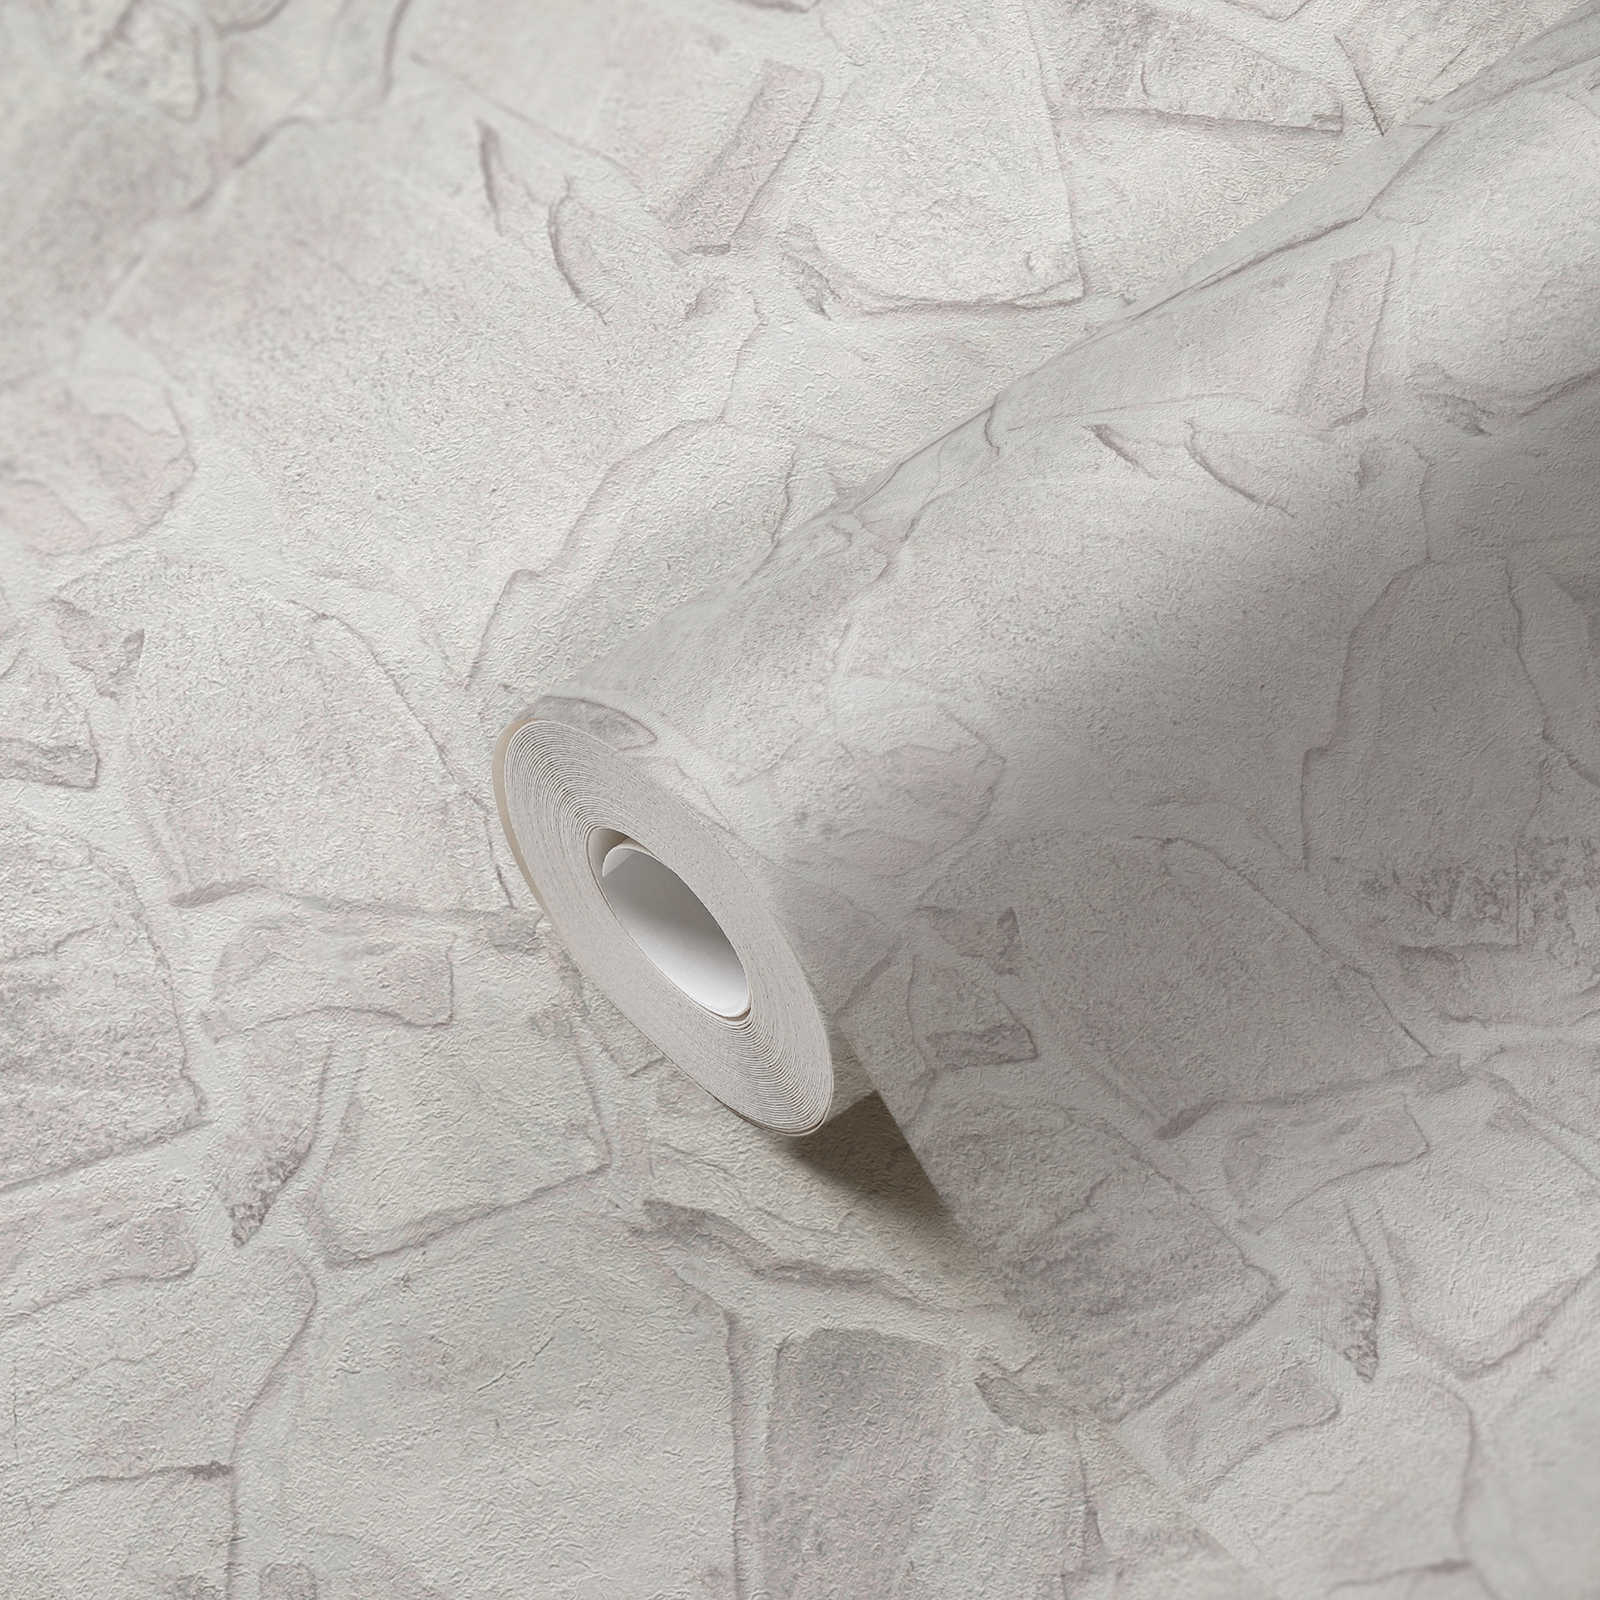             Papel pintado no tejido con aspecto de piedra con efecto de ladrillo en 3D - gris, blanco, gris
        